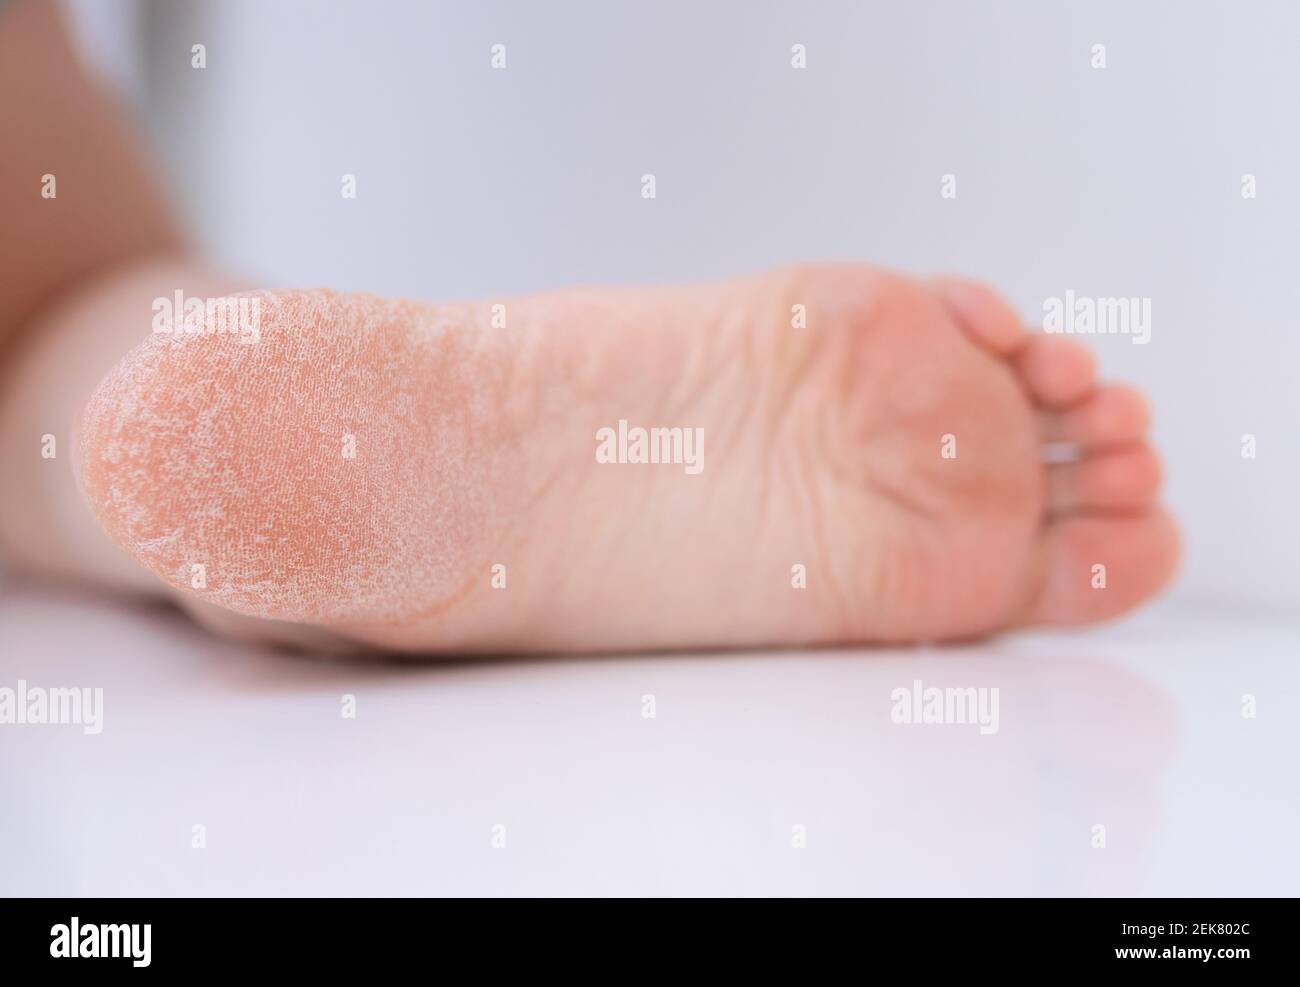 La pelle secca del piede è incrinata. Concetto di trattamento con creme idratanti ed esfoliazione per la guarigione di ferite e dolore durante la camminata. Disidratato s Foto Stock